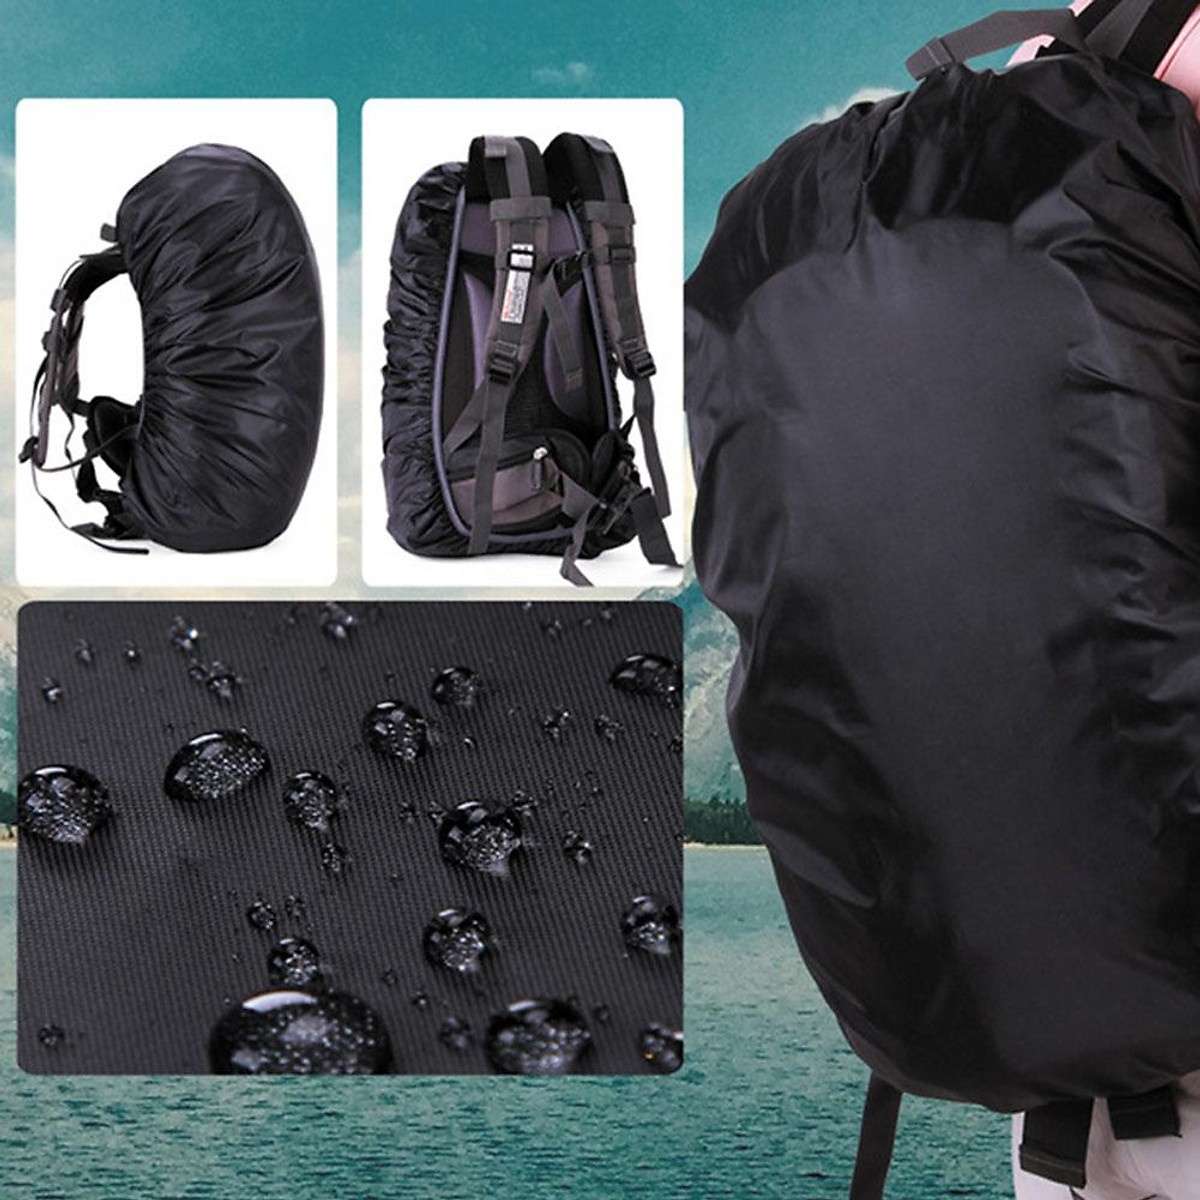 2 pcs Combo rain bag cover, Rain bag cover waterproof, rain bag cover  waterproof for bike